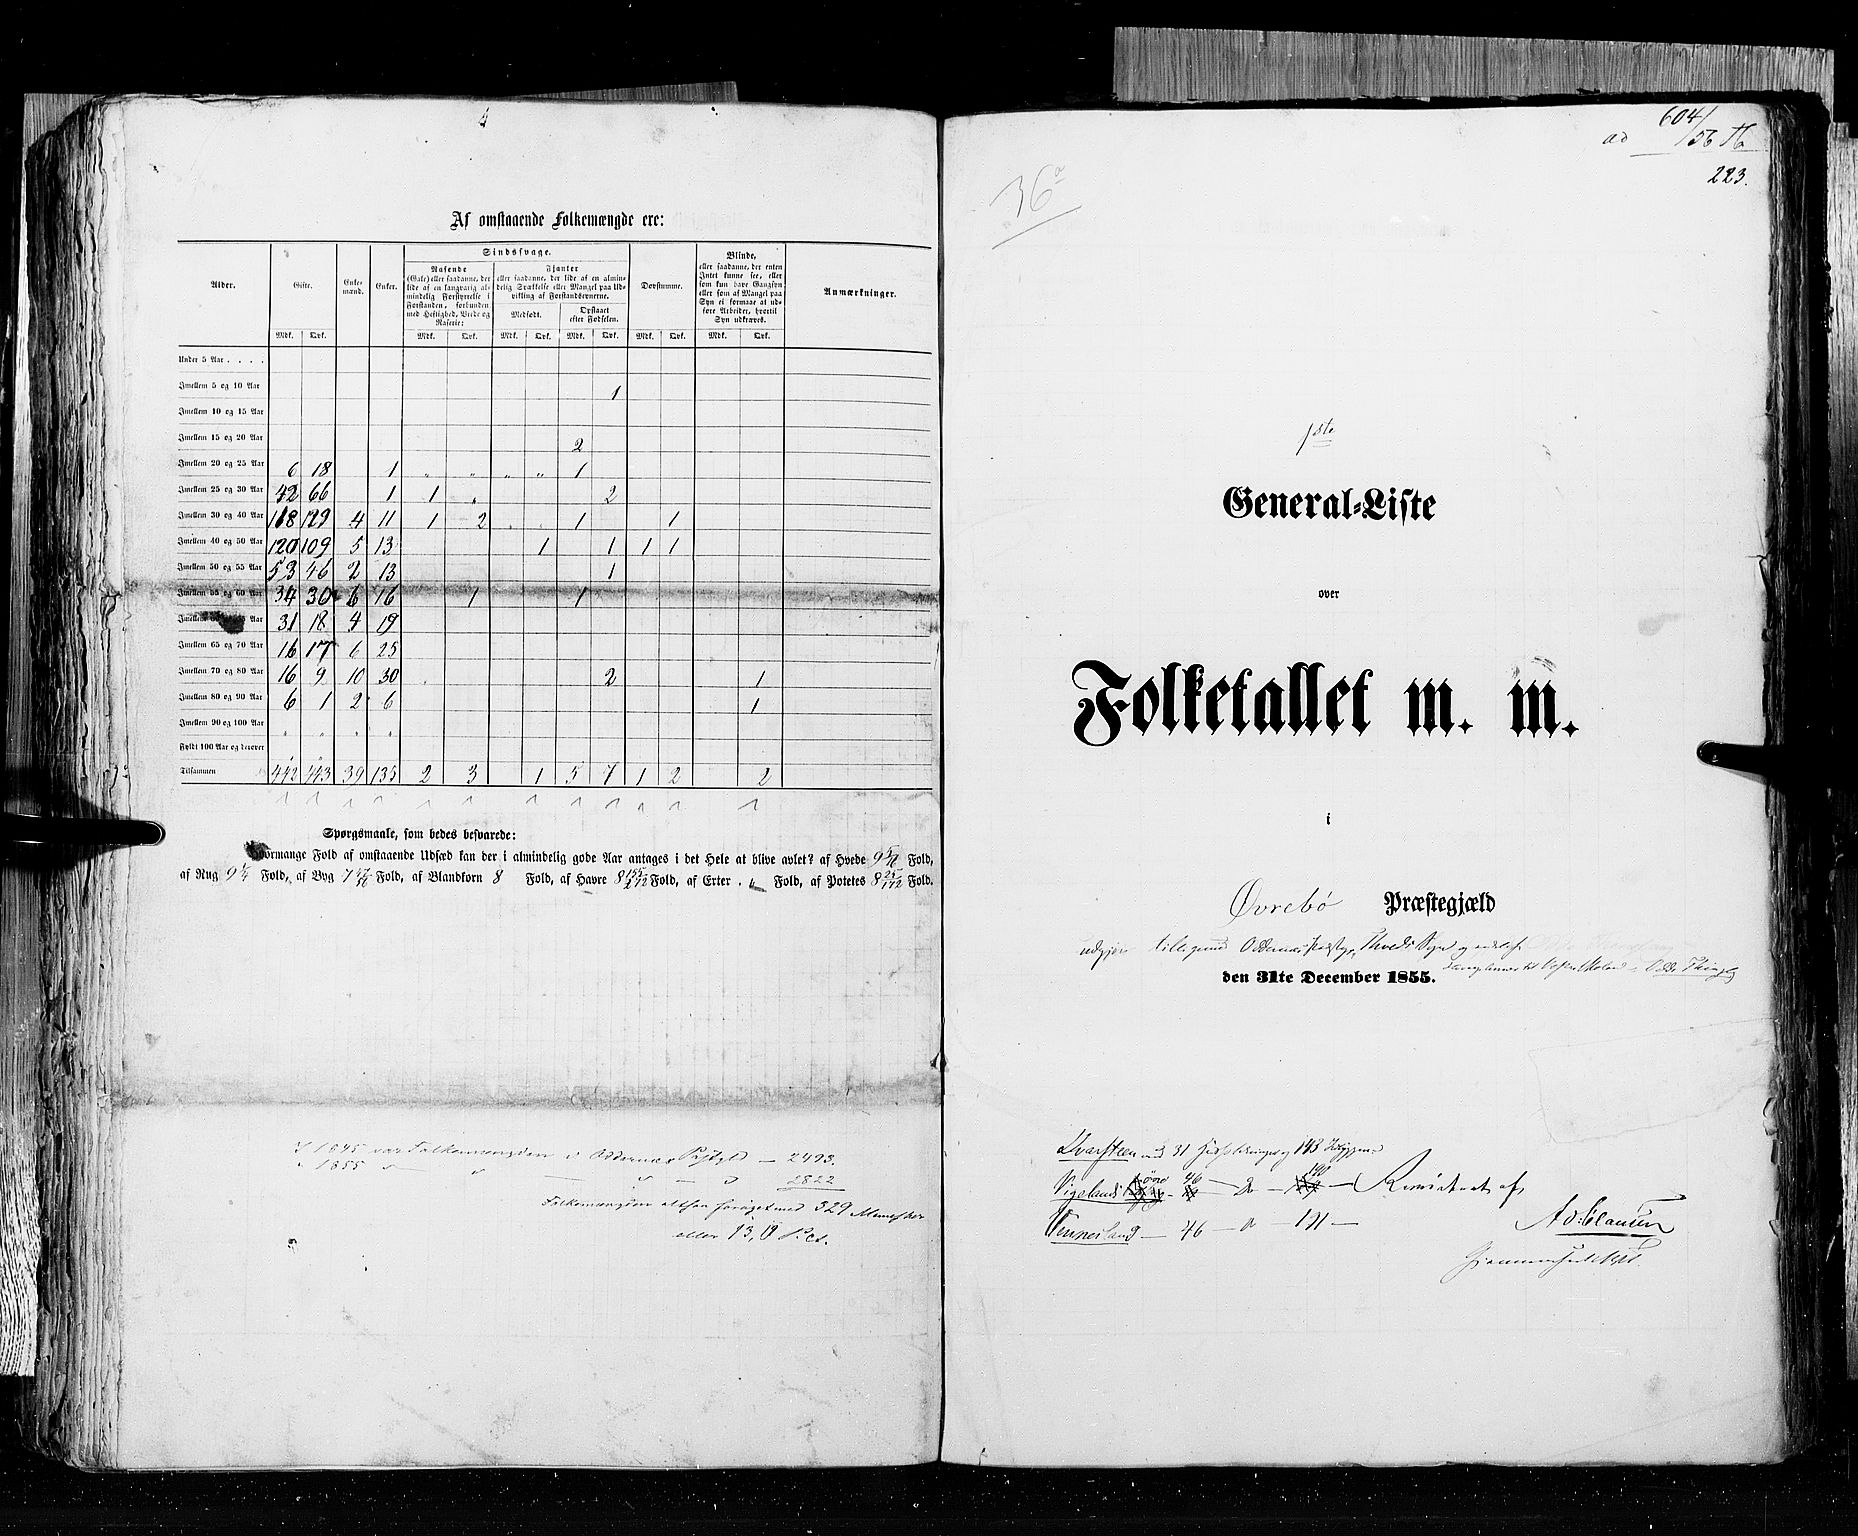 RA, Census 1855, vol. 3: Bratsberg amt, Nedenes amt og Lister og Mandal amt, 1855, p. 223